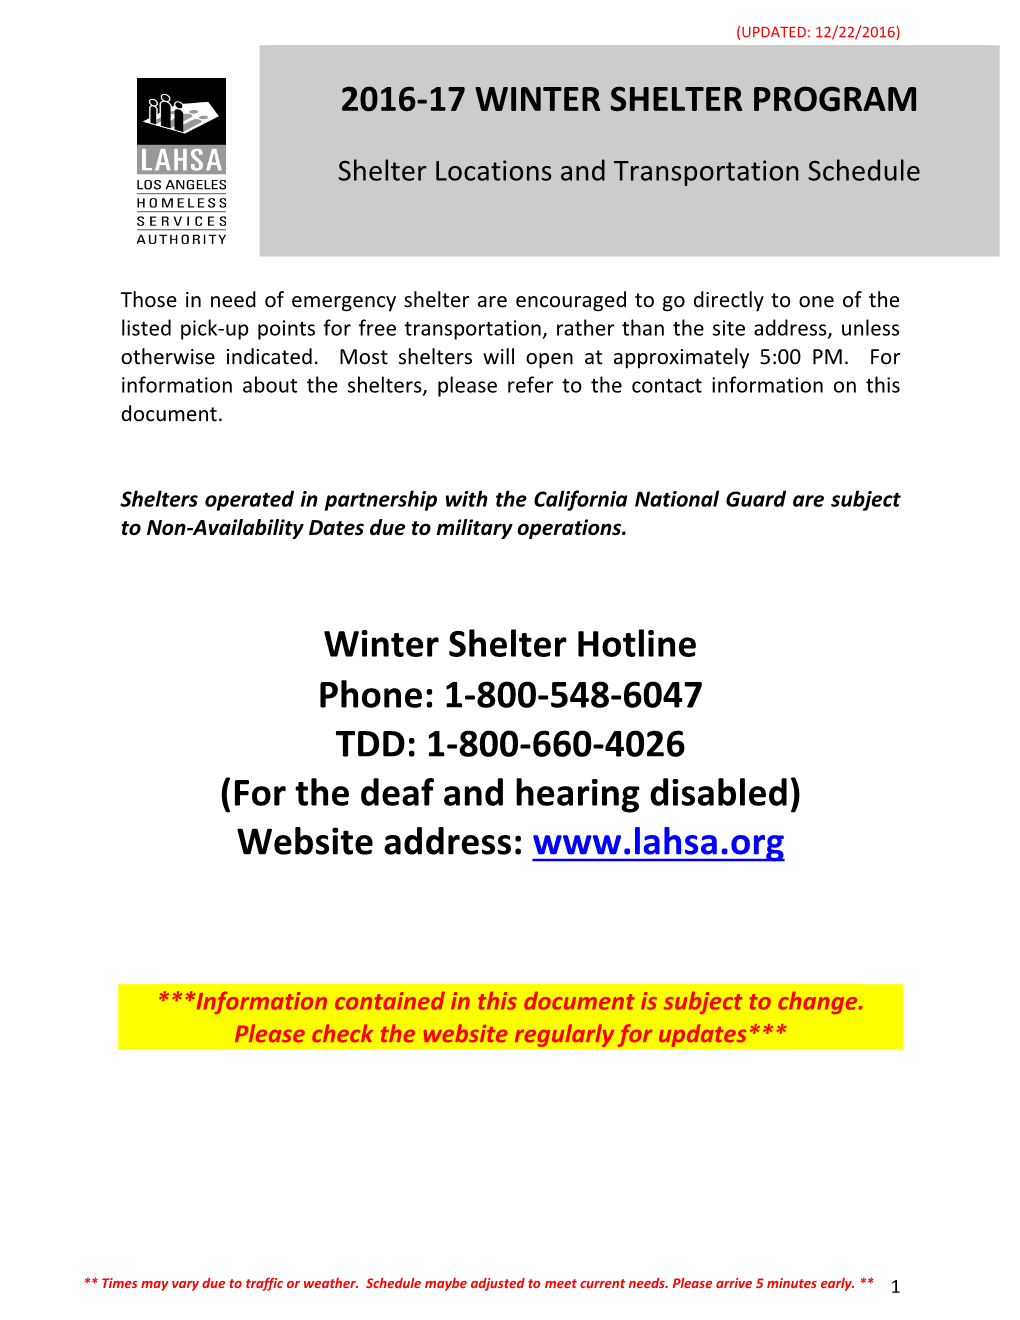 2016-17 Winter Shelter Program